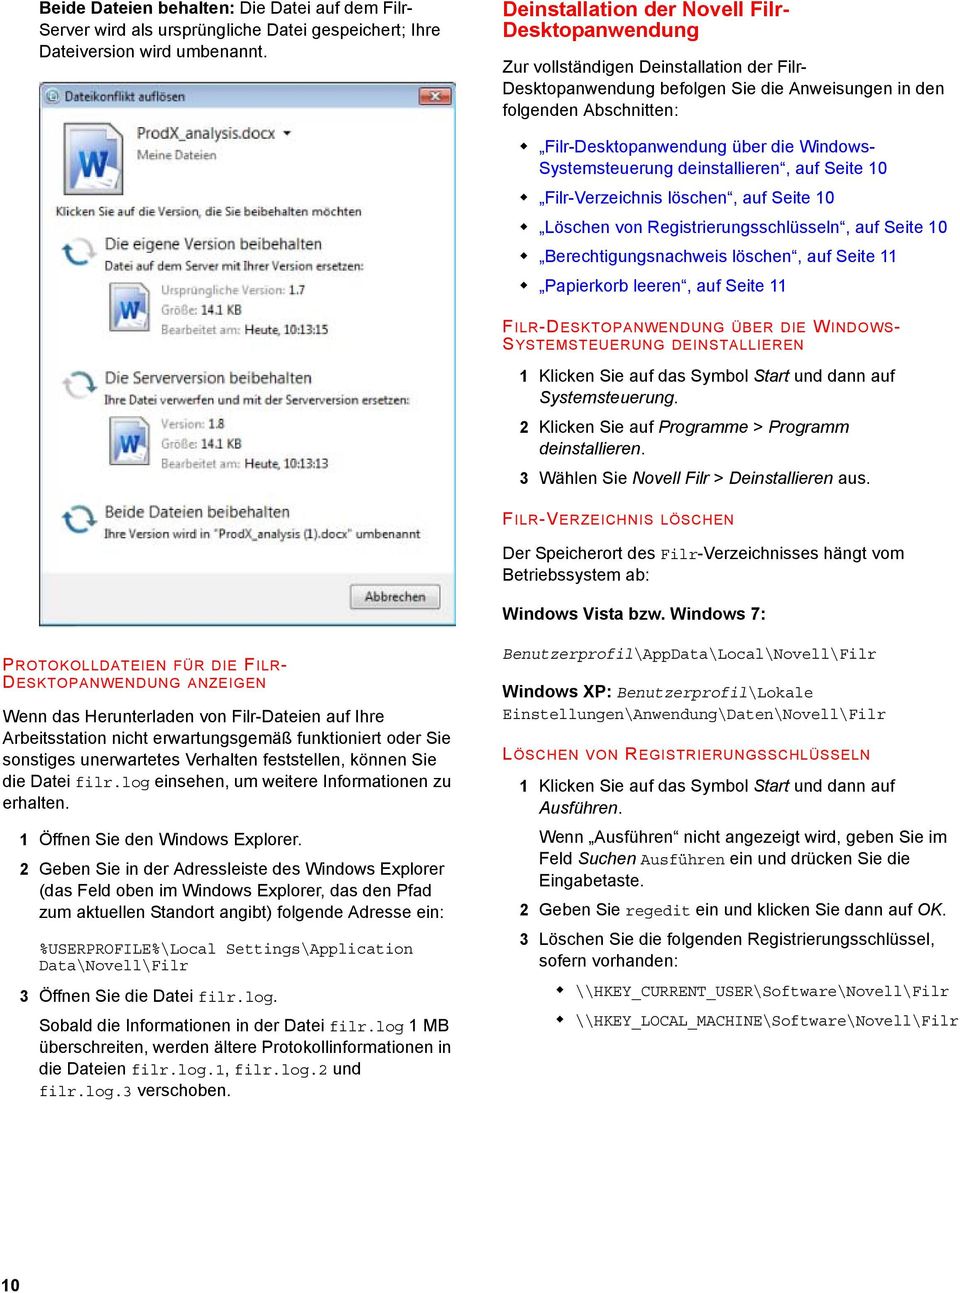 Windows- Systemsteuerung deinstallieren, auf Seite 10 Filr-Verzeichnis löschen, auf Seite 10 Löschen von Registrierungsschlüsseln, auf Seite 10 Berechtigungsnachweis löschen, auf Seite 11 Papierkorb